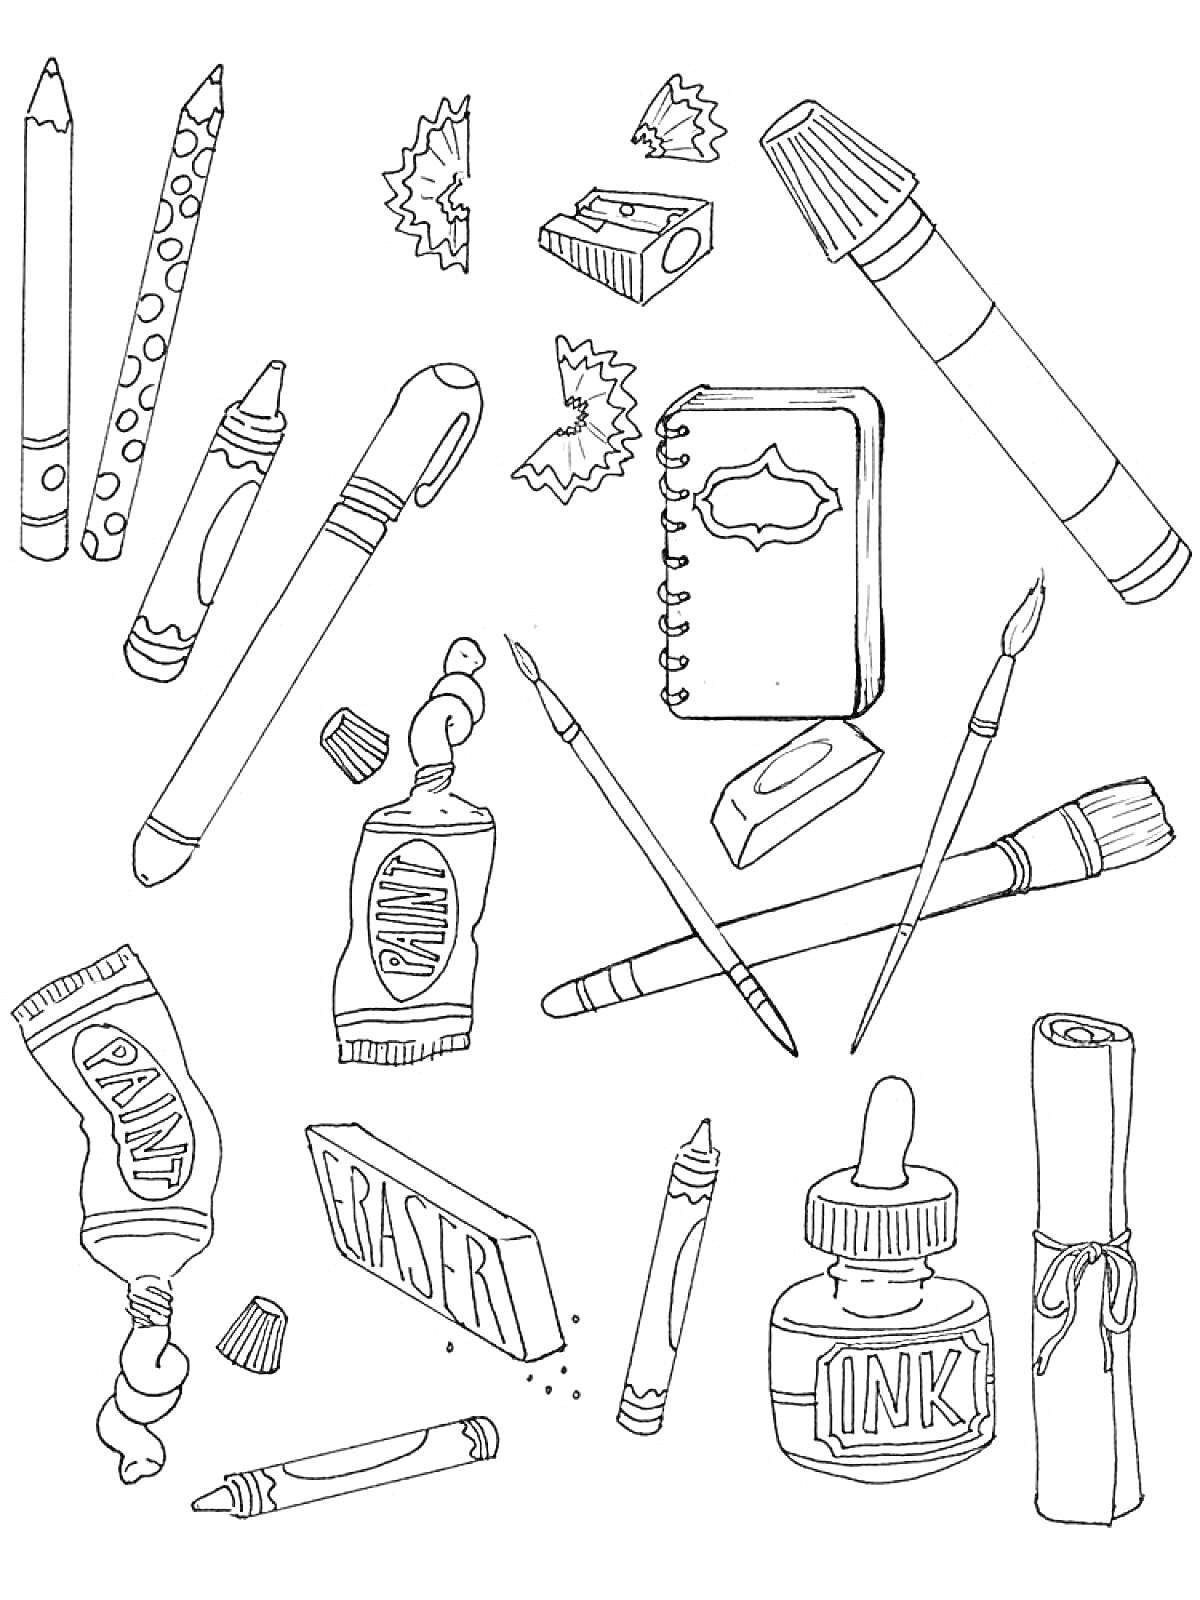 Раскраска Школьные принадлежности: карандаши, кусочки точилки, фломастер, мелки, точилка, блокнот, кисточки, ластик, краска, ручка, чернила, свёрток бумаги